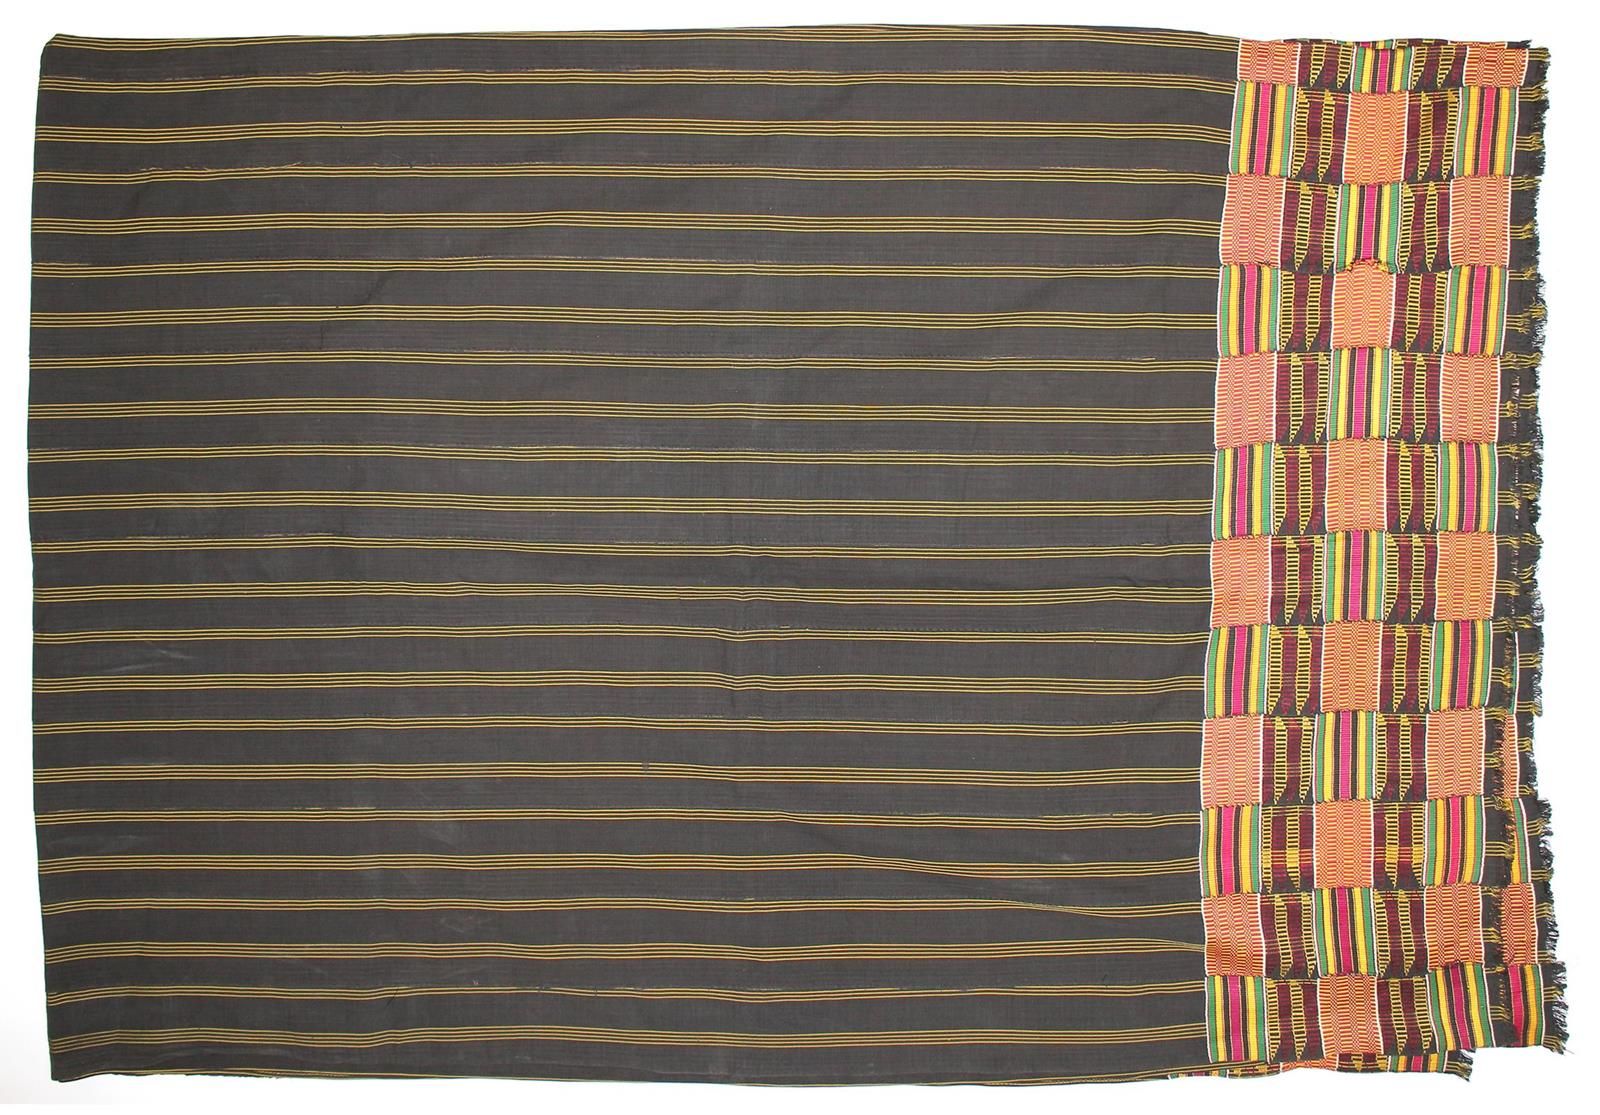 Ashanti Kente Cloth. Tuch der Ashanti, gelb u. Schwarzgrundig. 308 x 212 cm. D